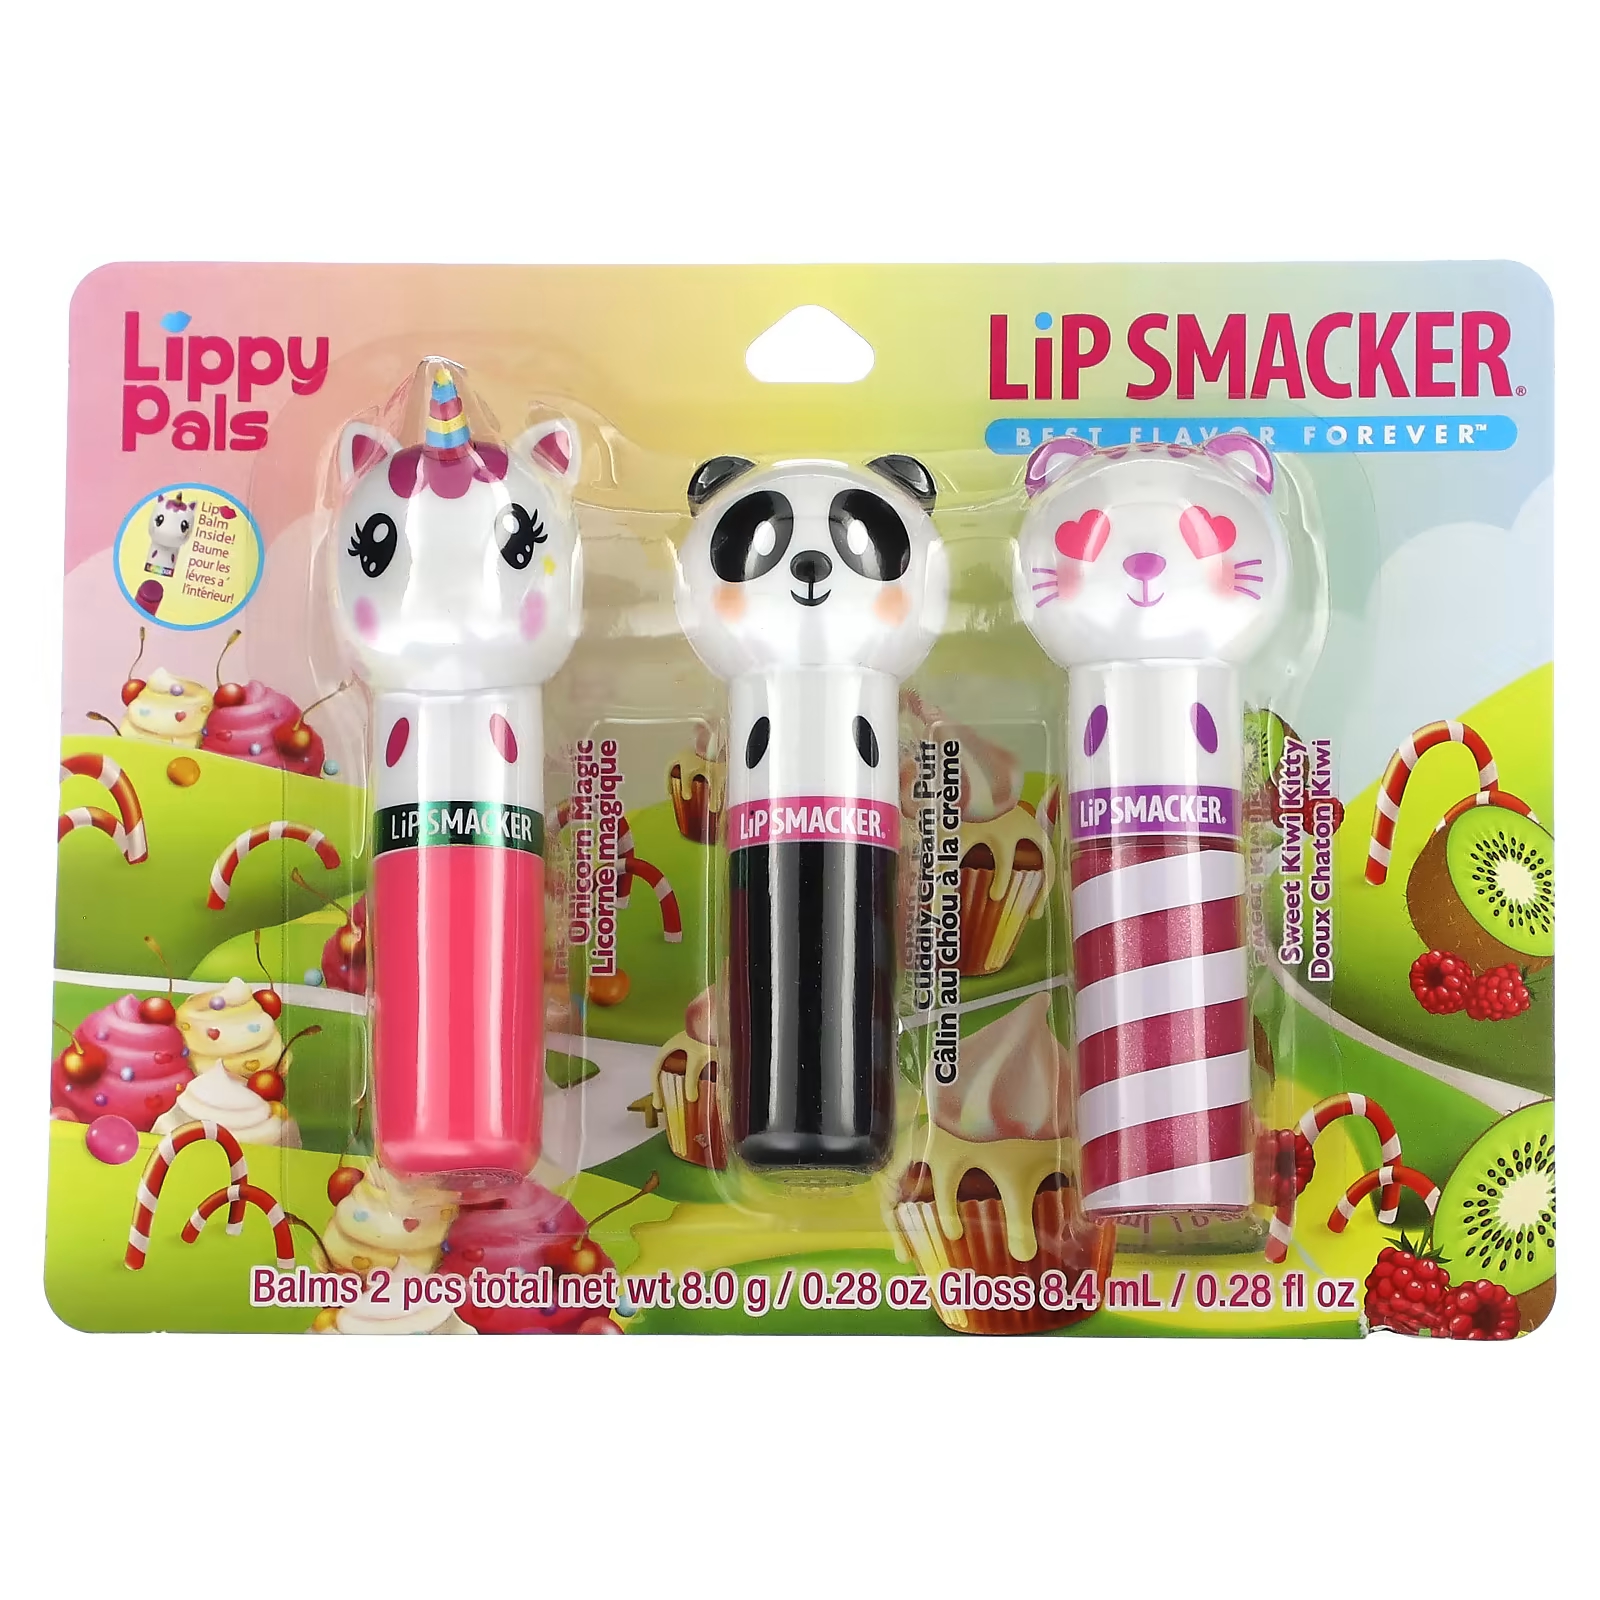 Бальзам для губ Lip Smacker Lippy Pals, 3 шт 16.4 г zahler paraguard улучшенная поддержка кишечной микрофлоры 4 жидк унц 118 мл